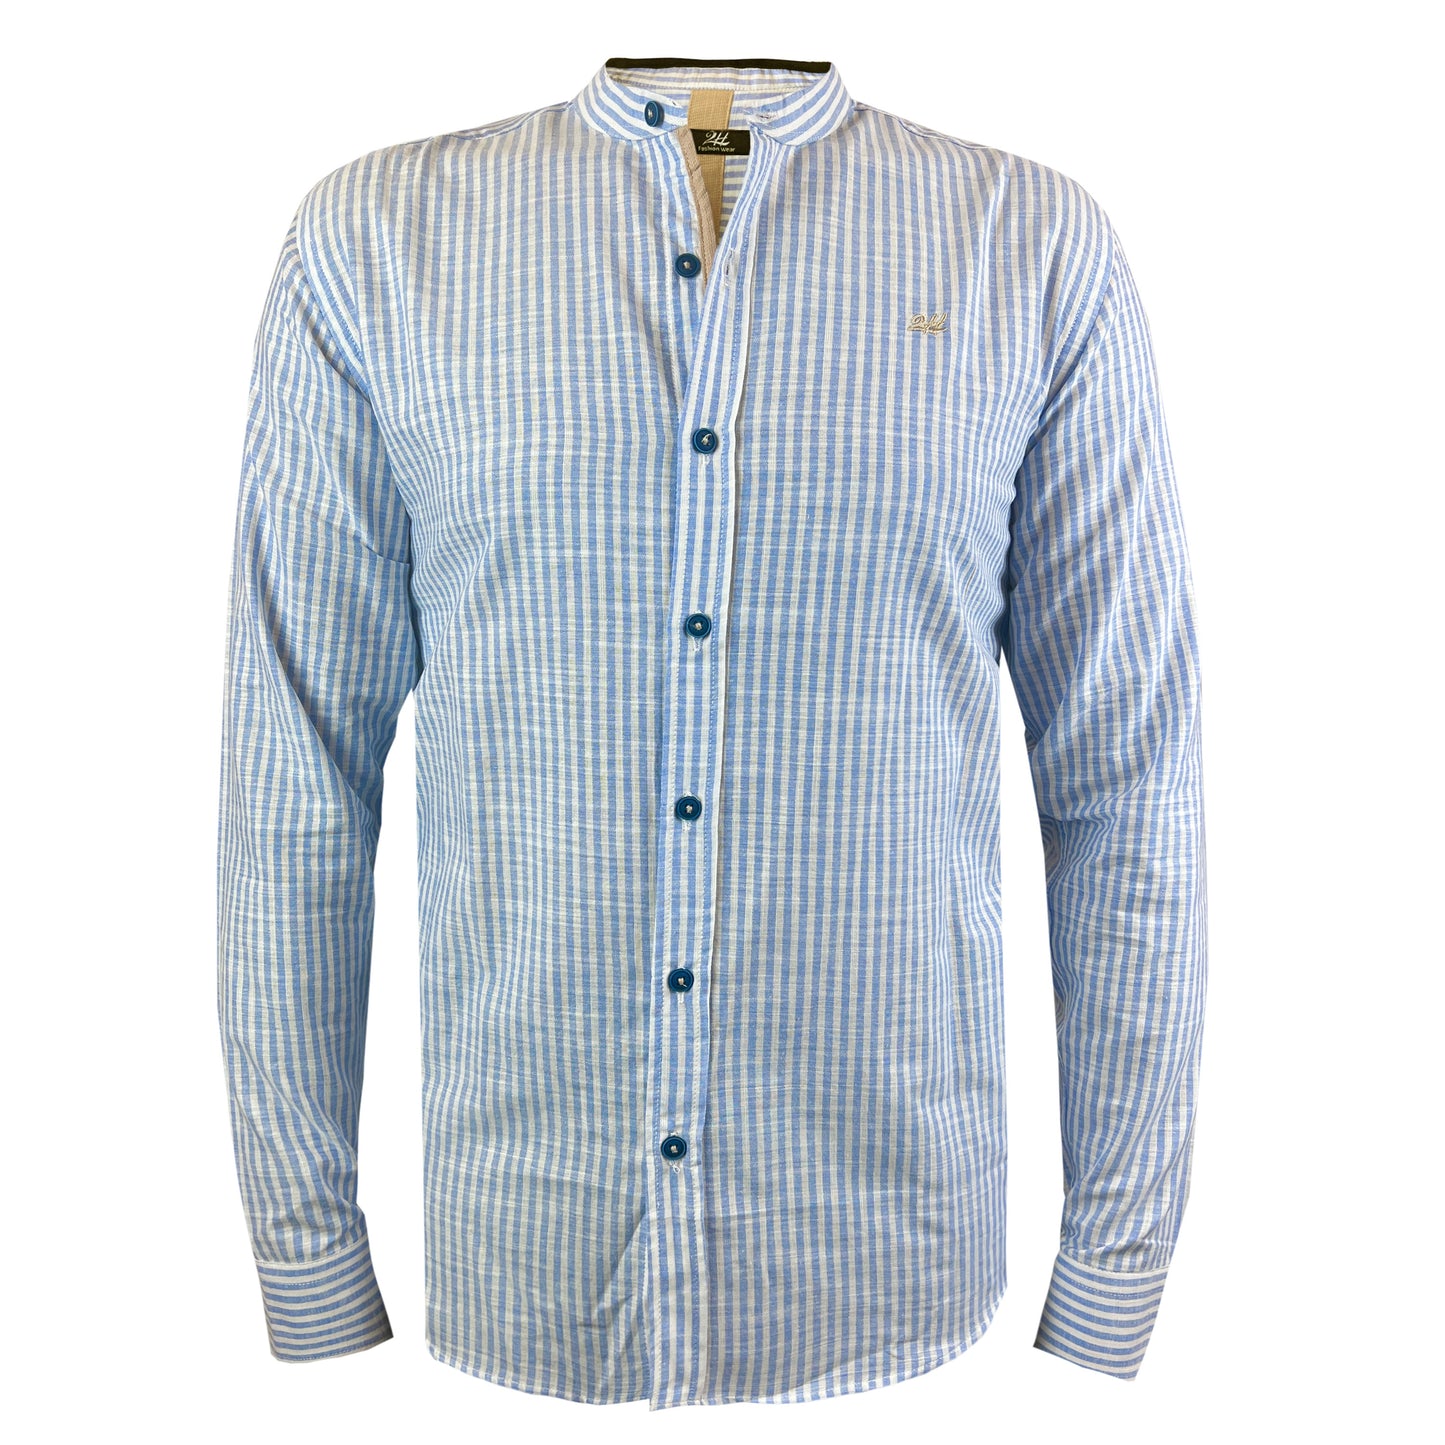 2H #1003 Light Blue Striped Linen Shirt